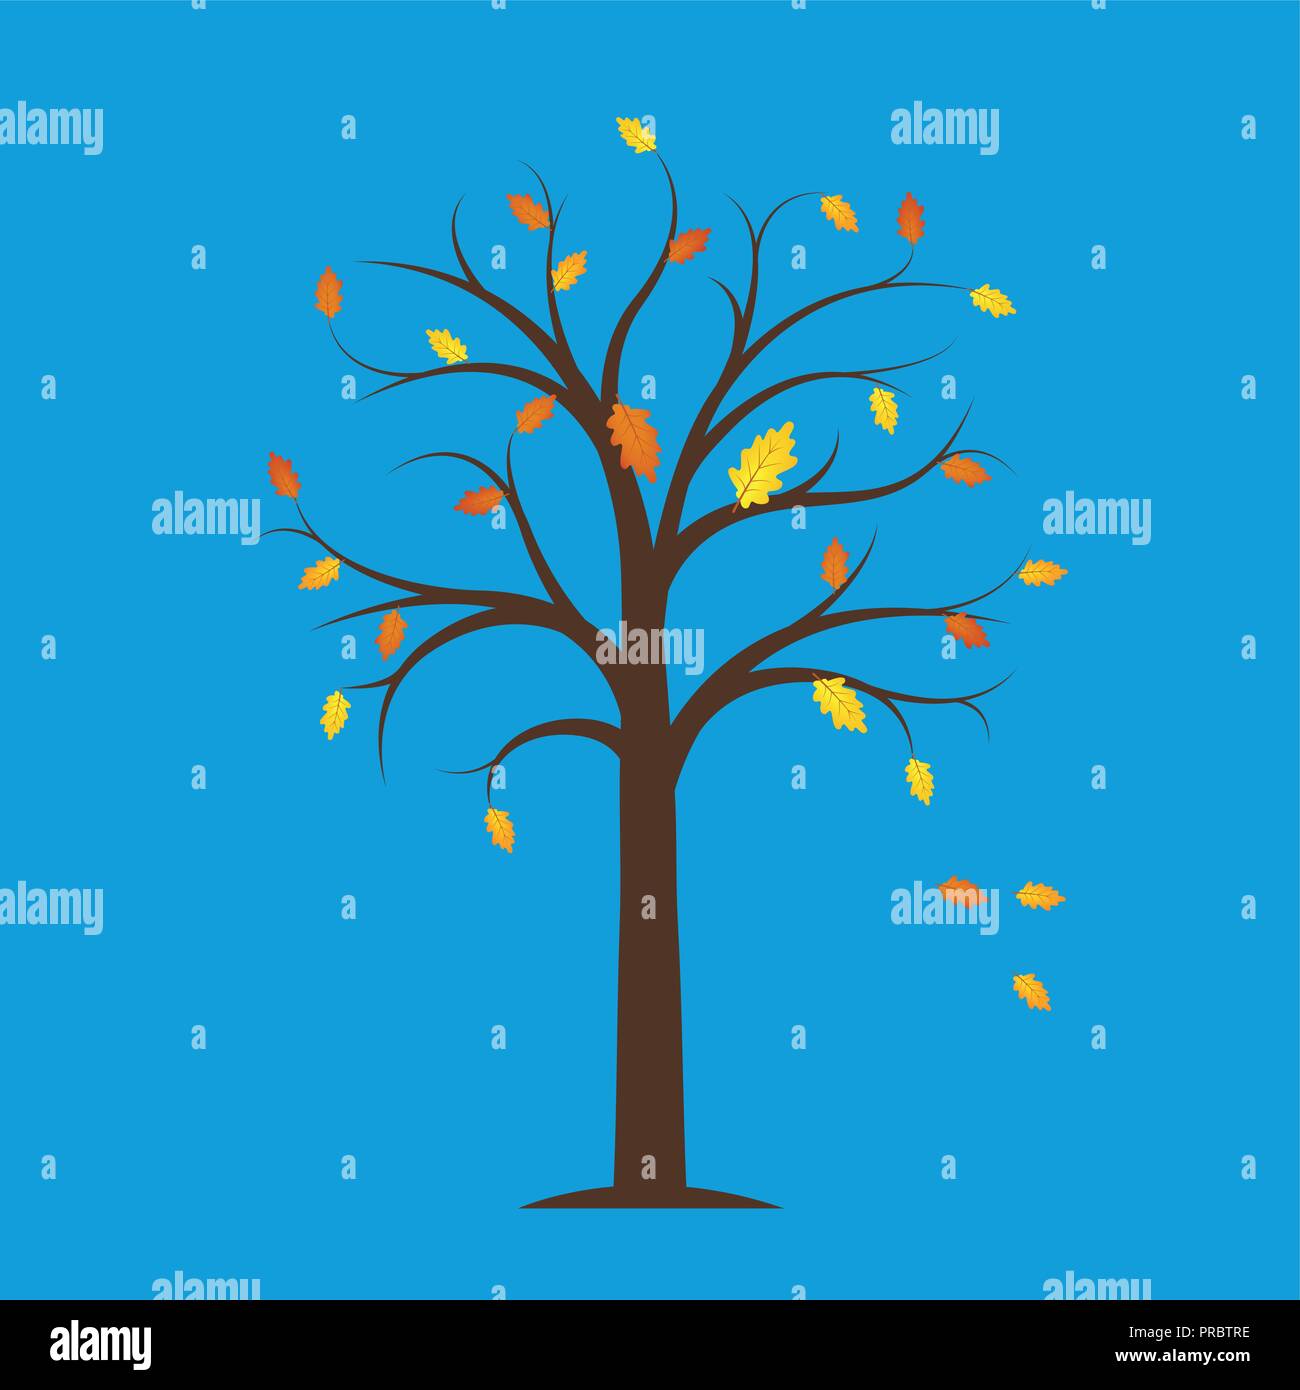 Autumn Tree con giallo e arancione caduta foglie su uno sfondo blu illustrazione vettoriale EPS10 Illustrazione Vettoriale